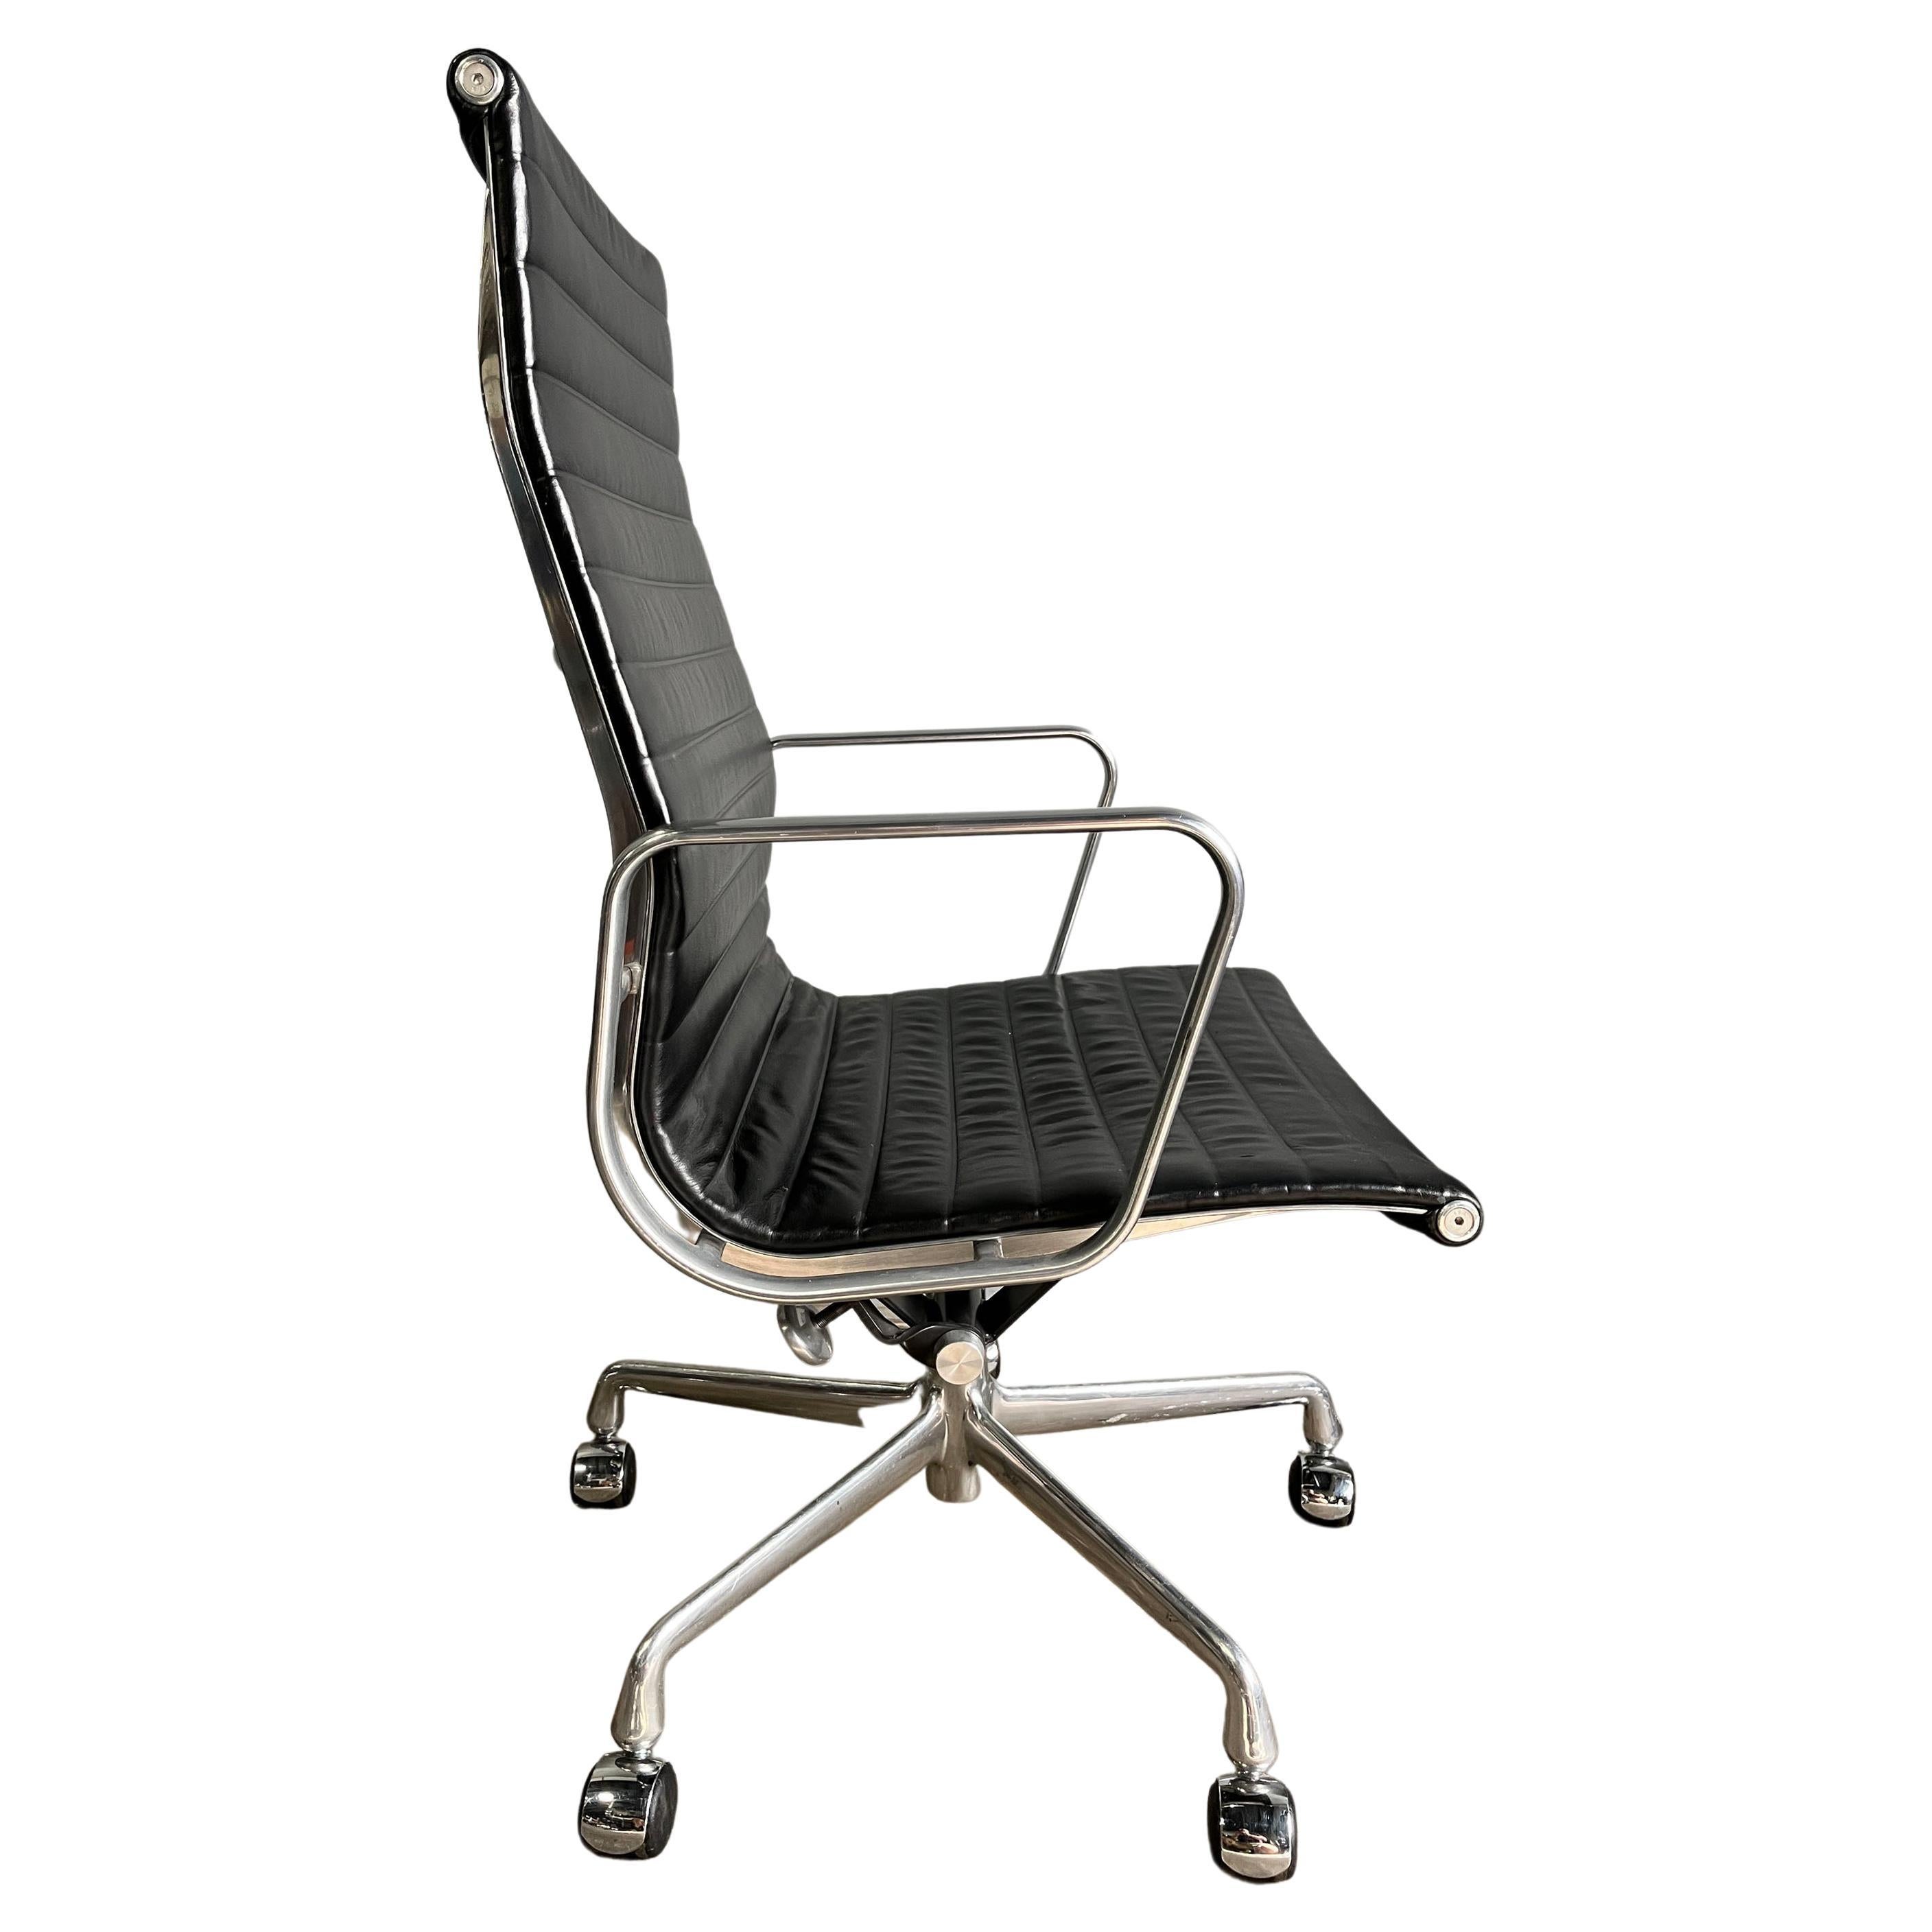 Pide presupuesto de envío personalizado

Se venden estas auténticas sillas Eames para el Grupo de Aluminio Herman Miller en piel negra afelpada de primera calidad con respaldo alto. Un icono del diseño moderno de mediados de siglo que sigue